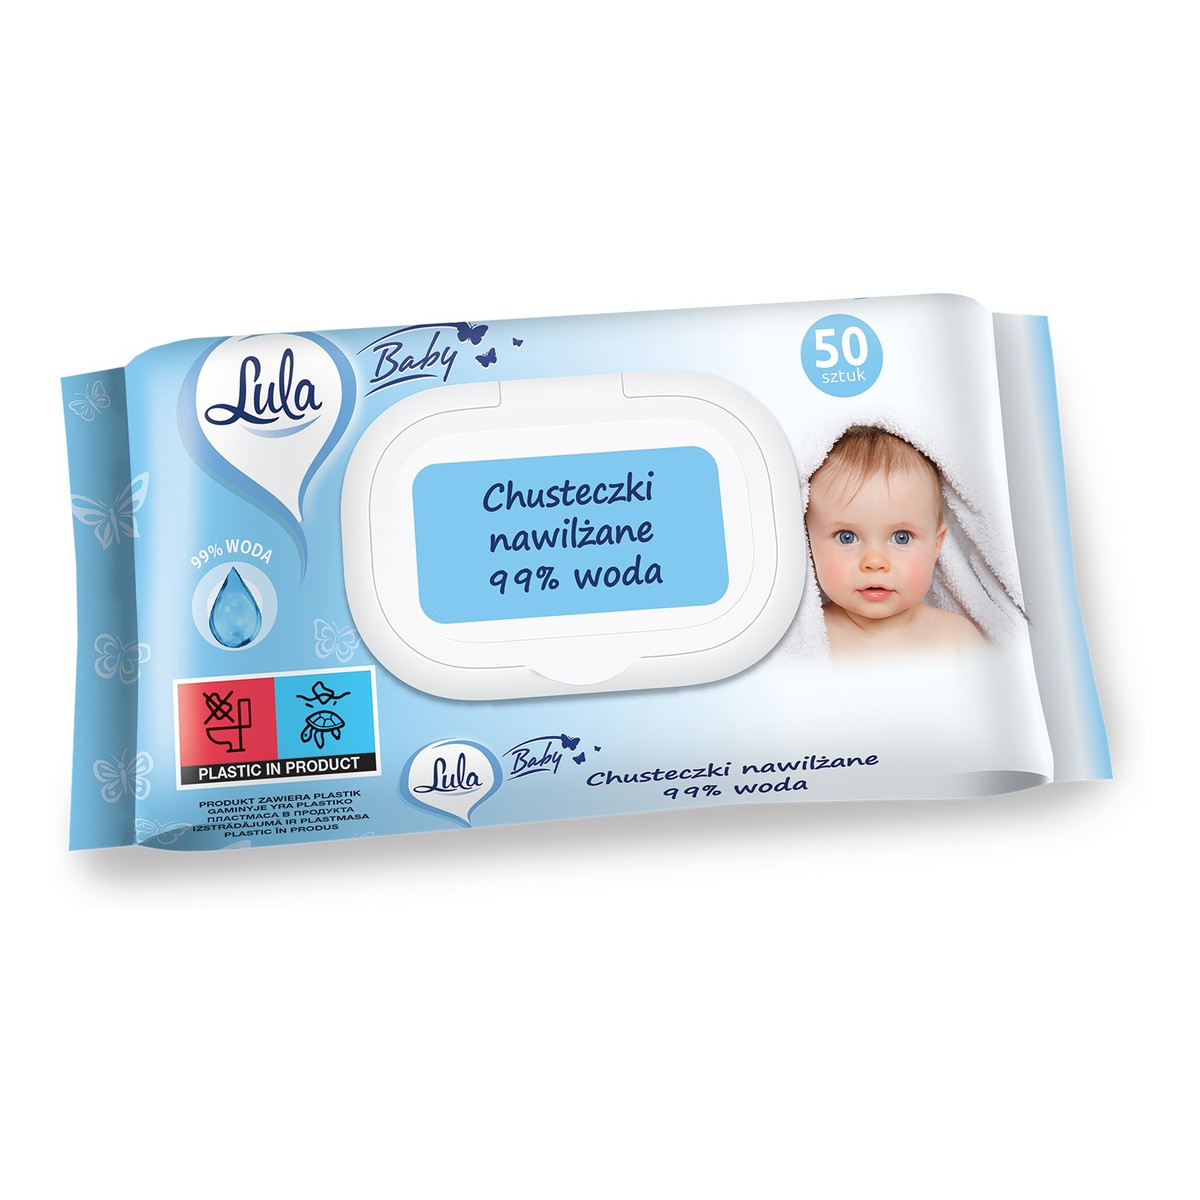 Lula Baby Chusteczki nawilżane dla niemowląt i dzieci-99% wody 1op.-50szt